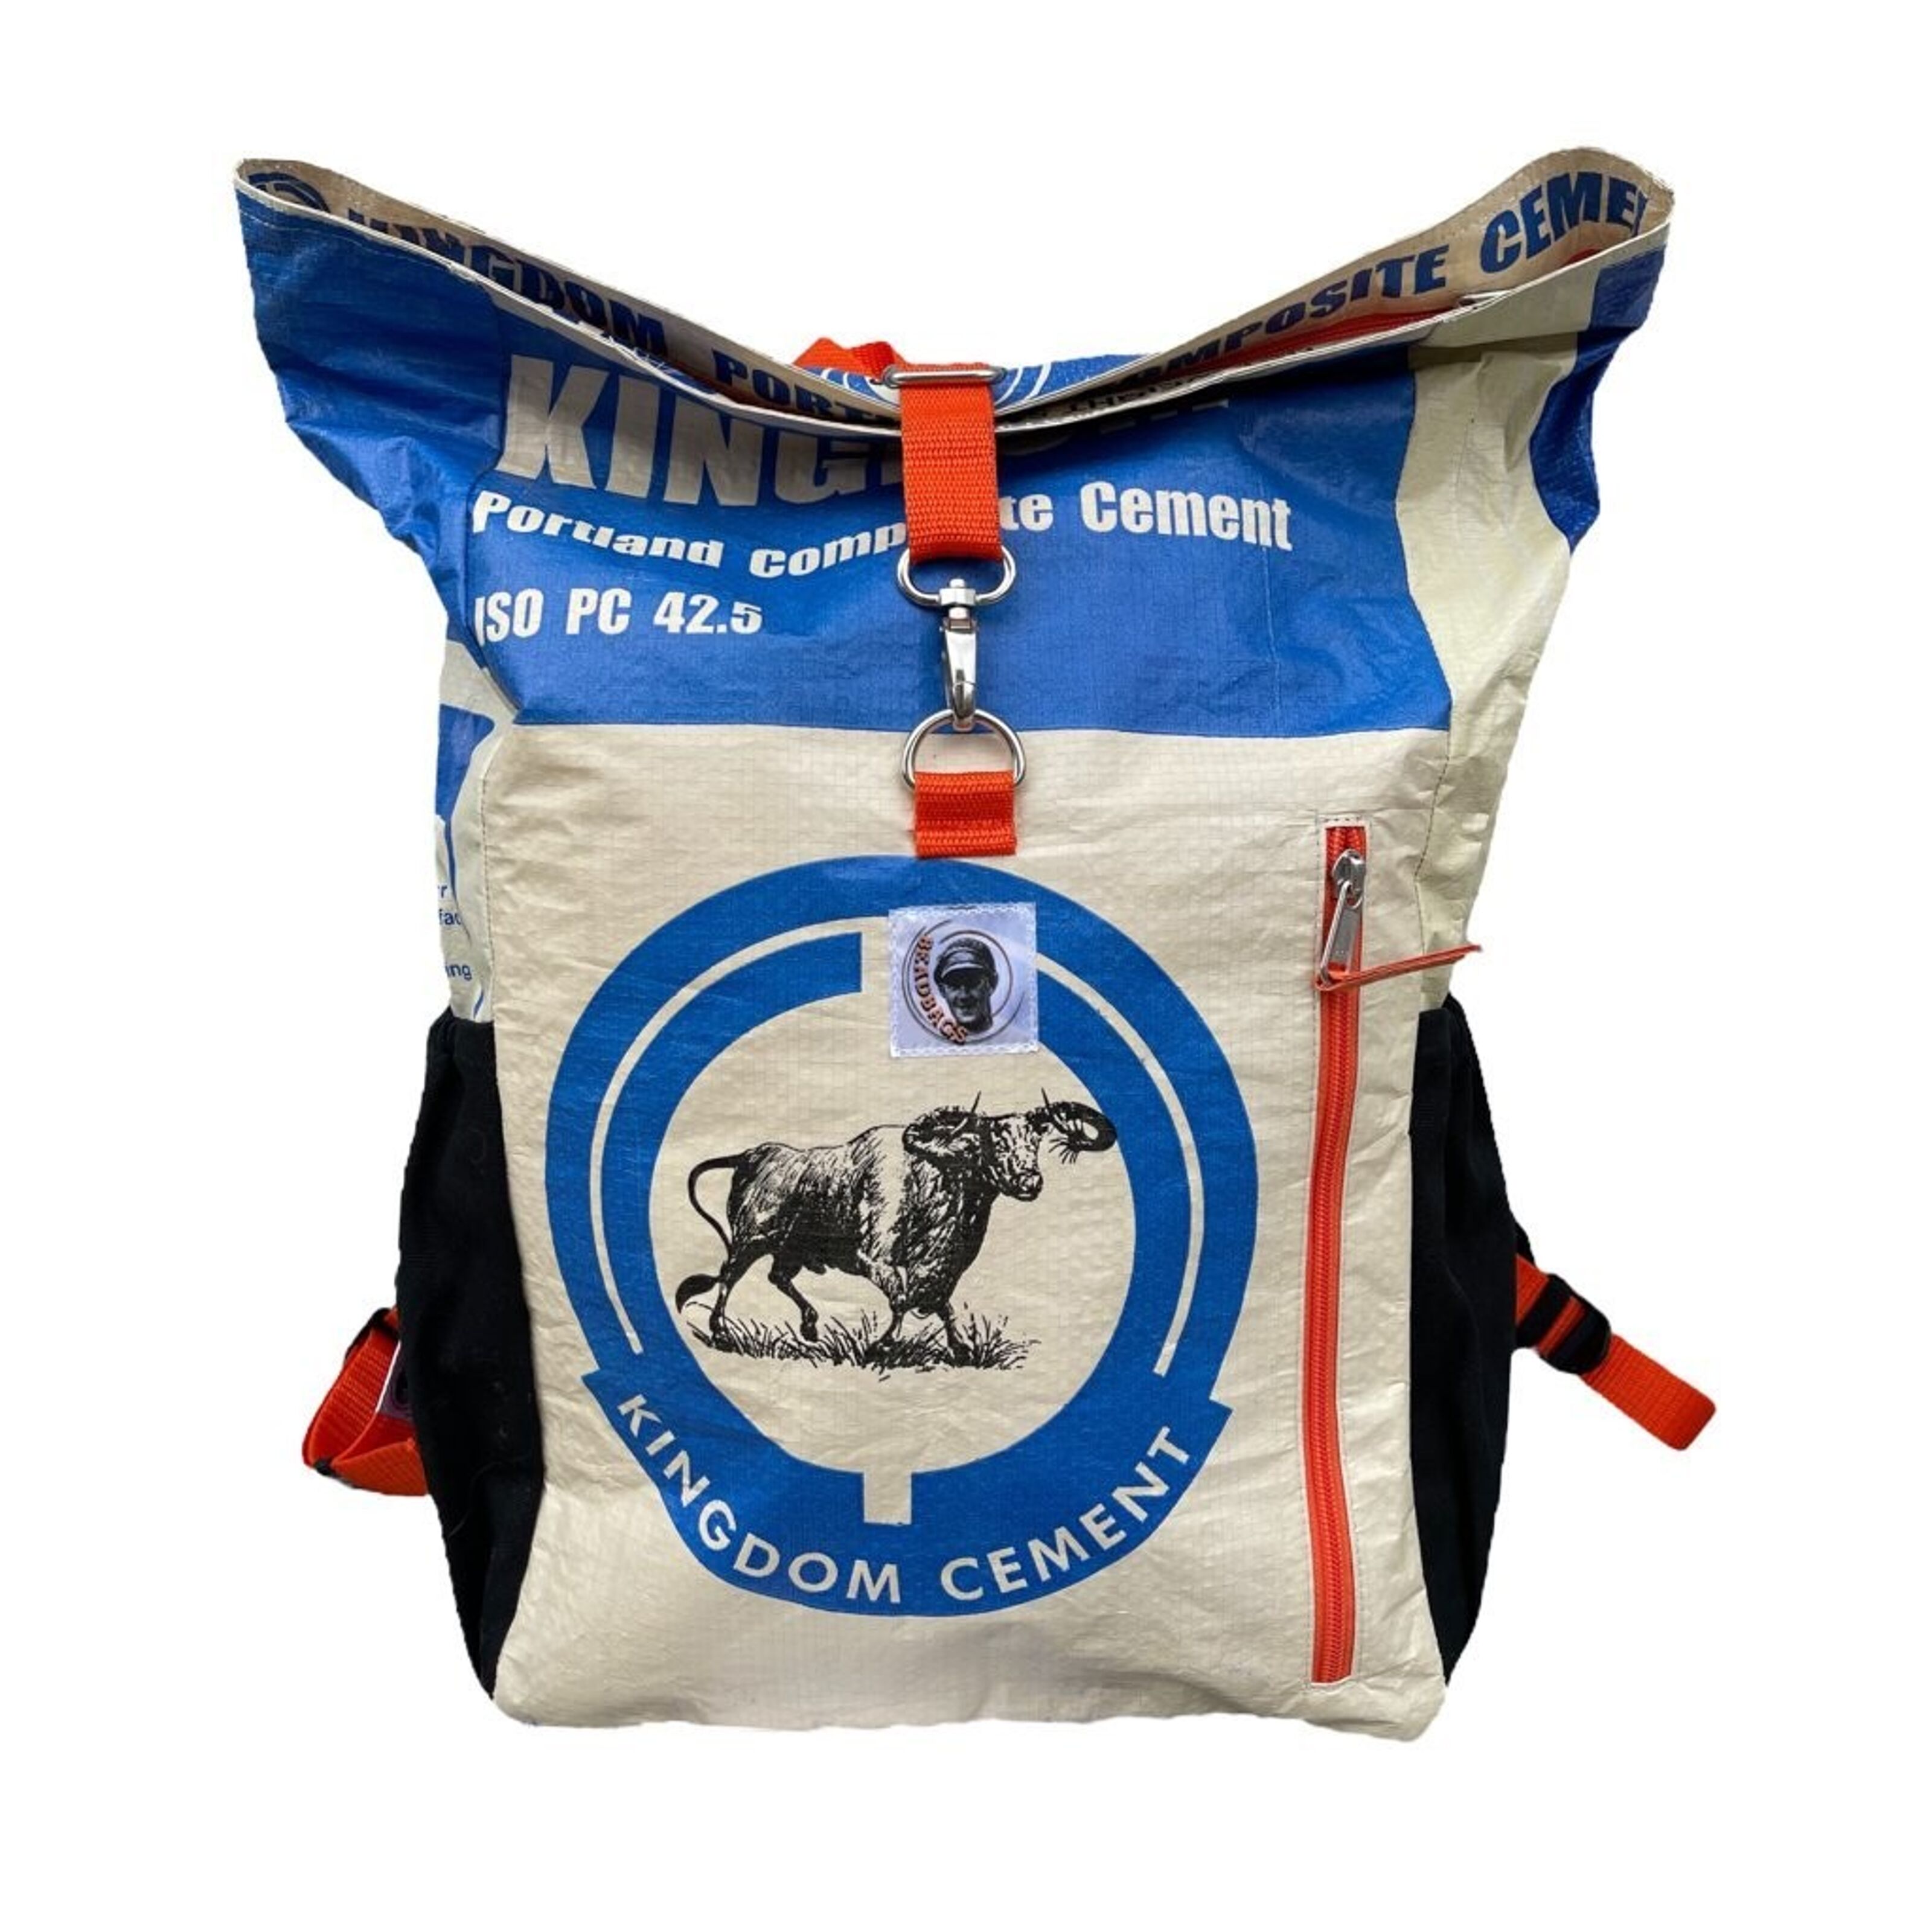 Kaufen Sie Beadbags Adventure Rucksack Ri100 Zement blau zu